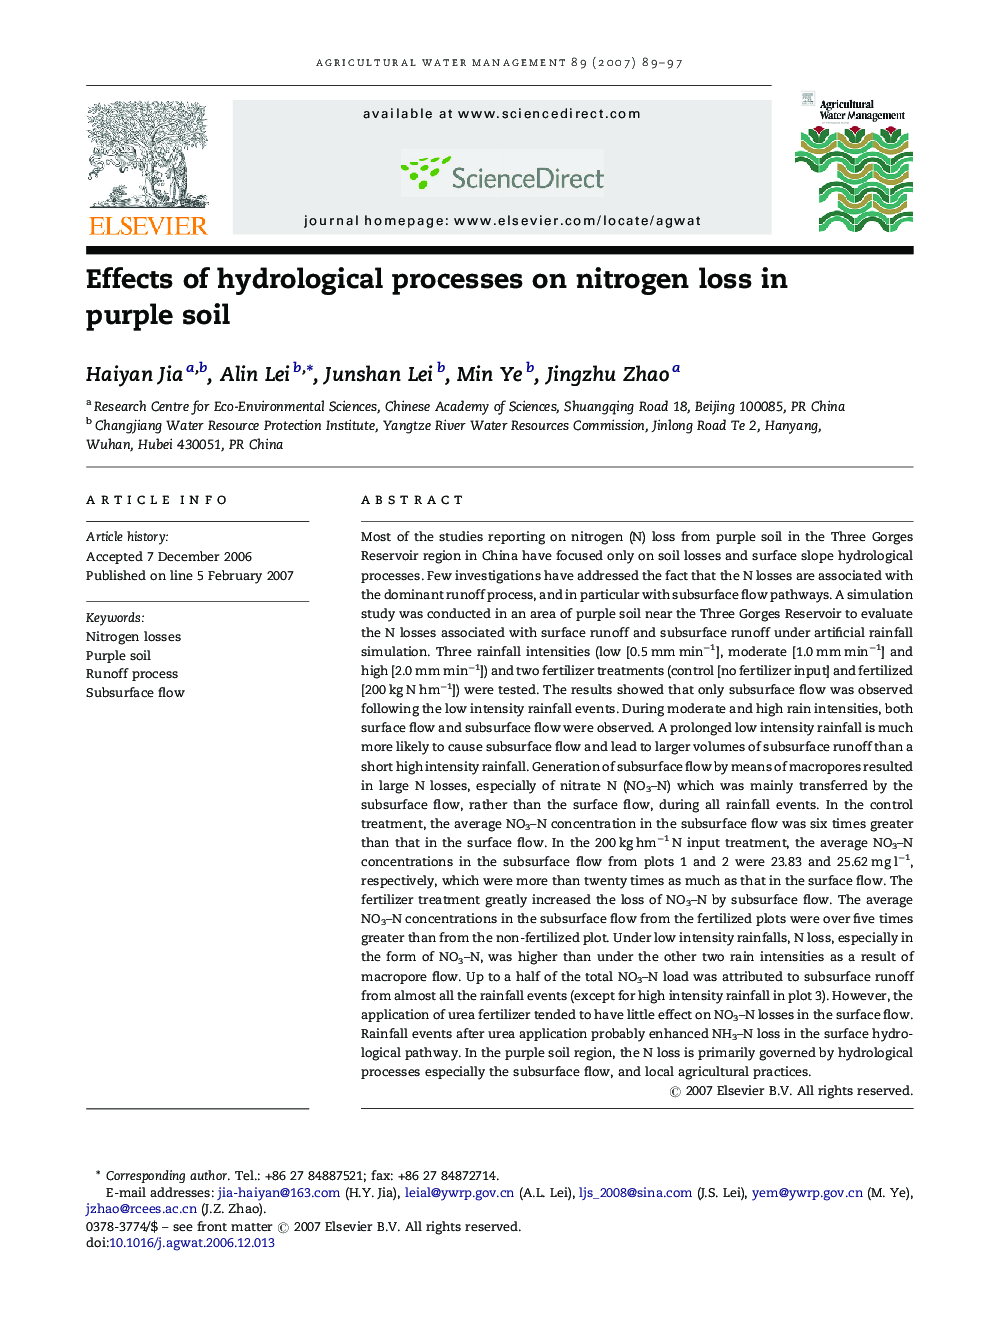 Effects of hydrological processes on nitrogen loss in purple soil